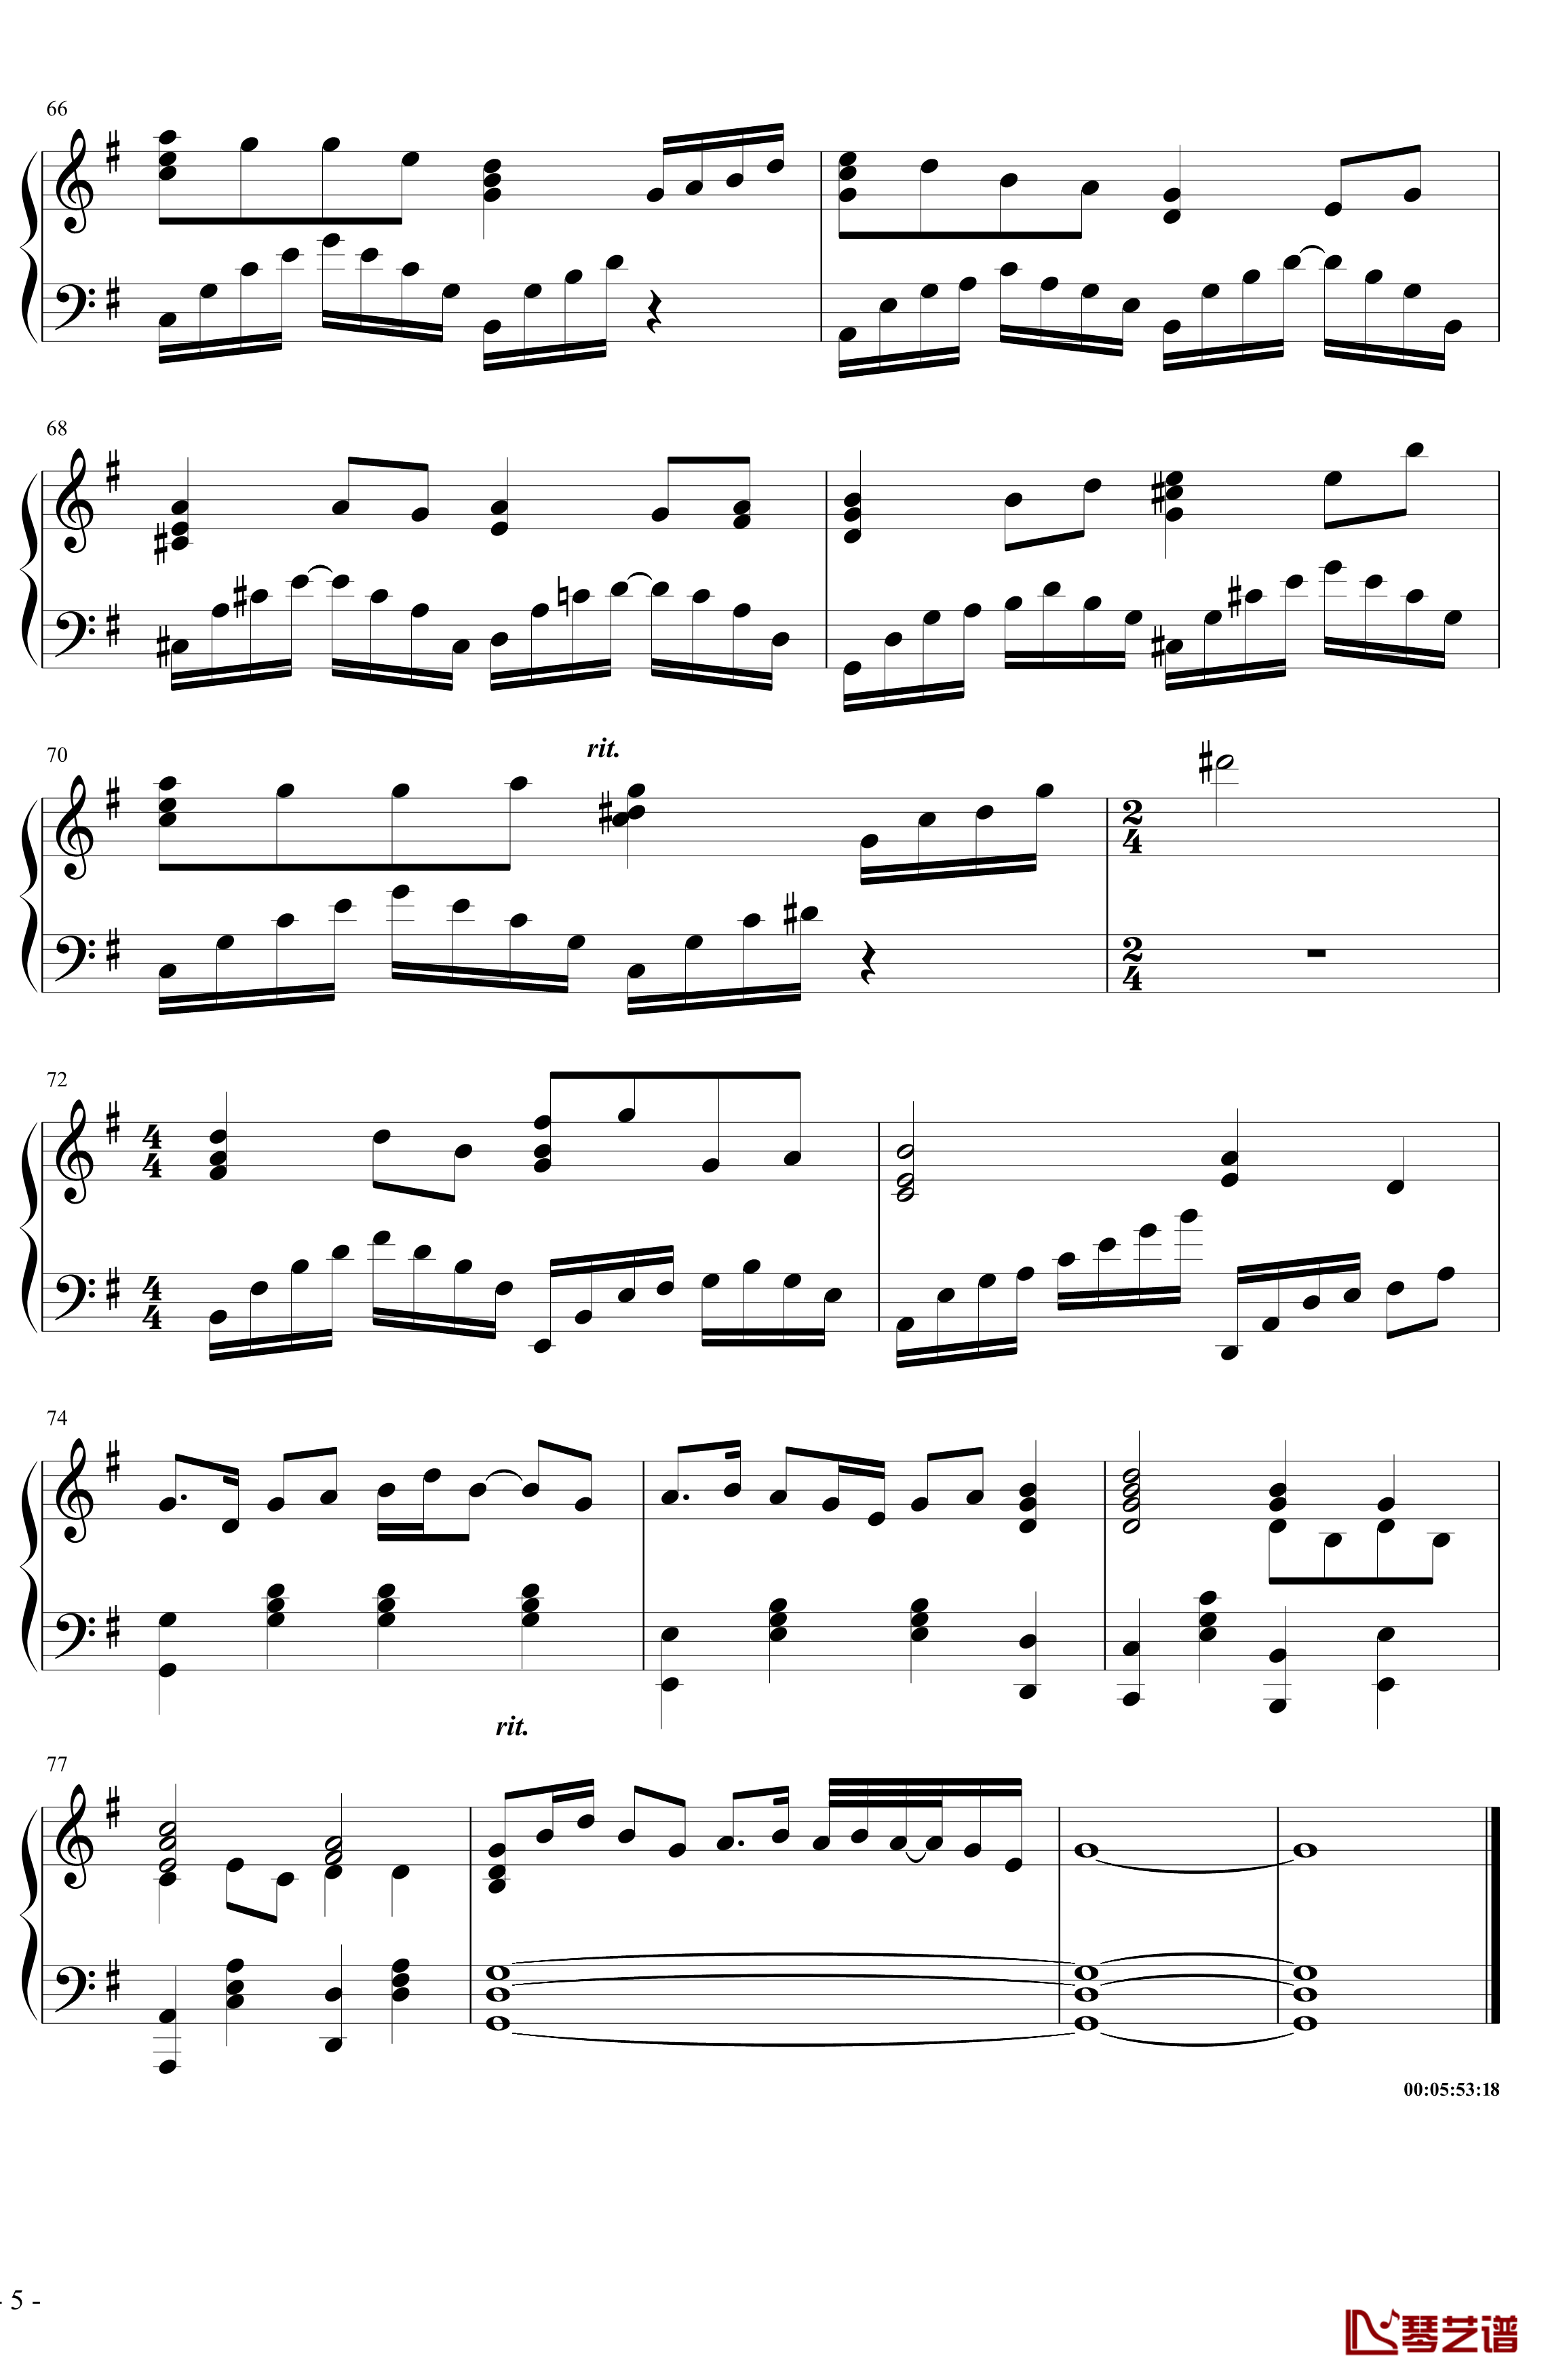 菊花台钢琴谱-超级演奏版-周杰伦5